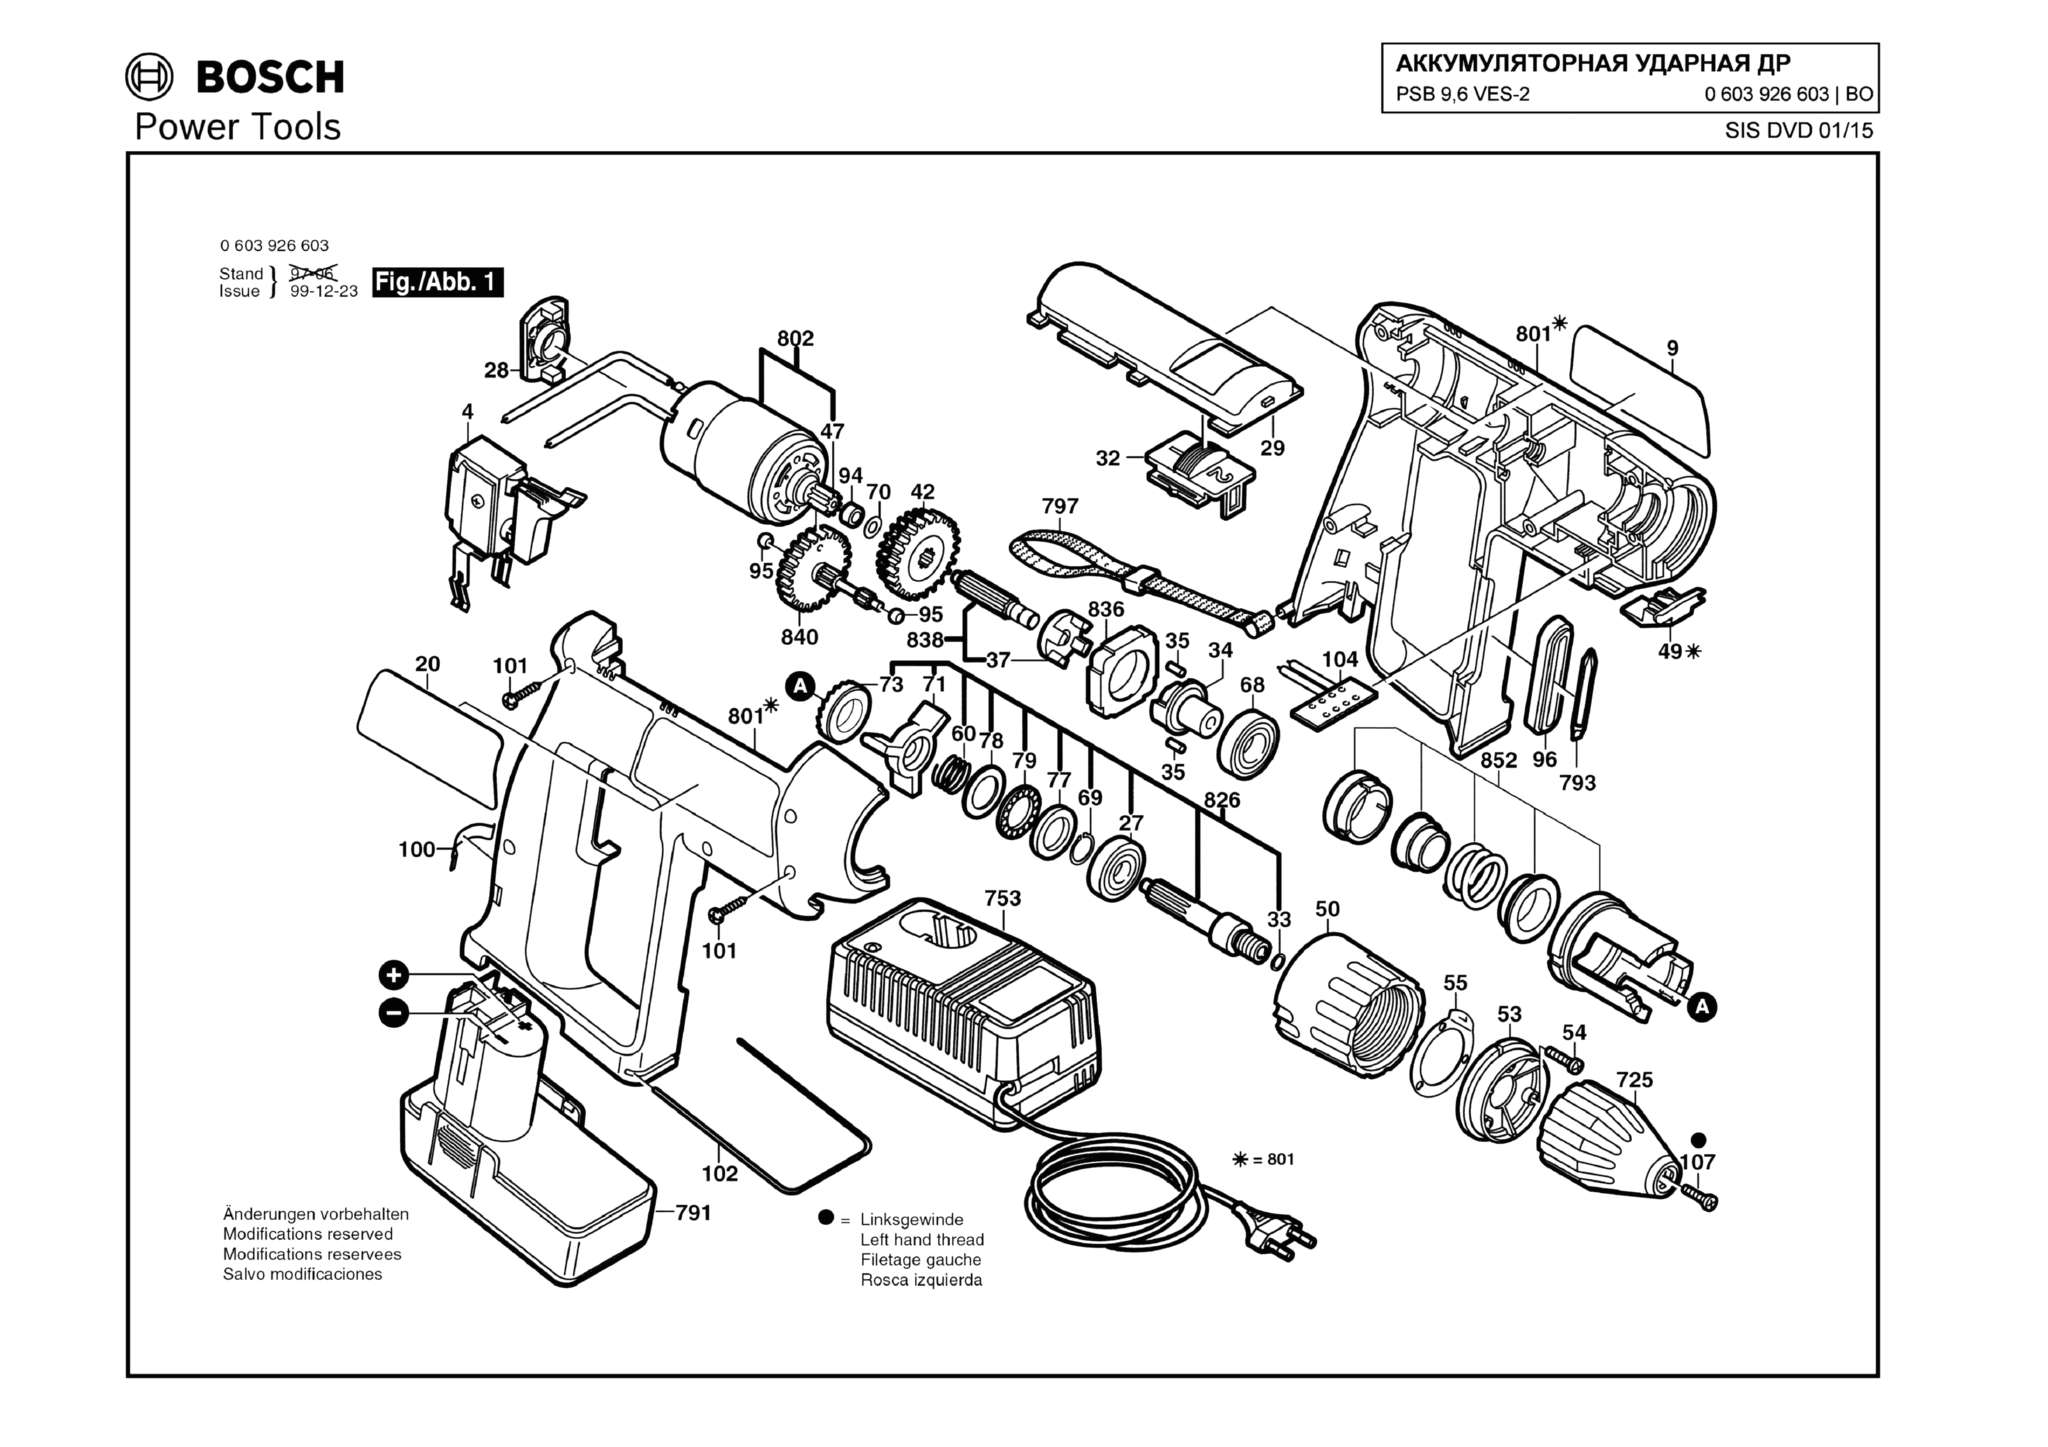 Запчасти, схема и деталировка Bosch PSB 9,6 VES-2 (ТИП 0603926603)